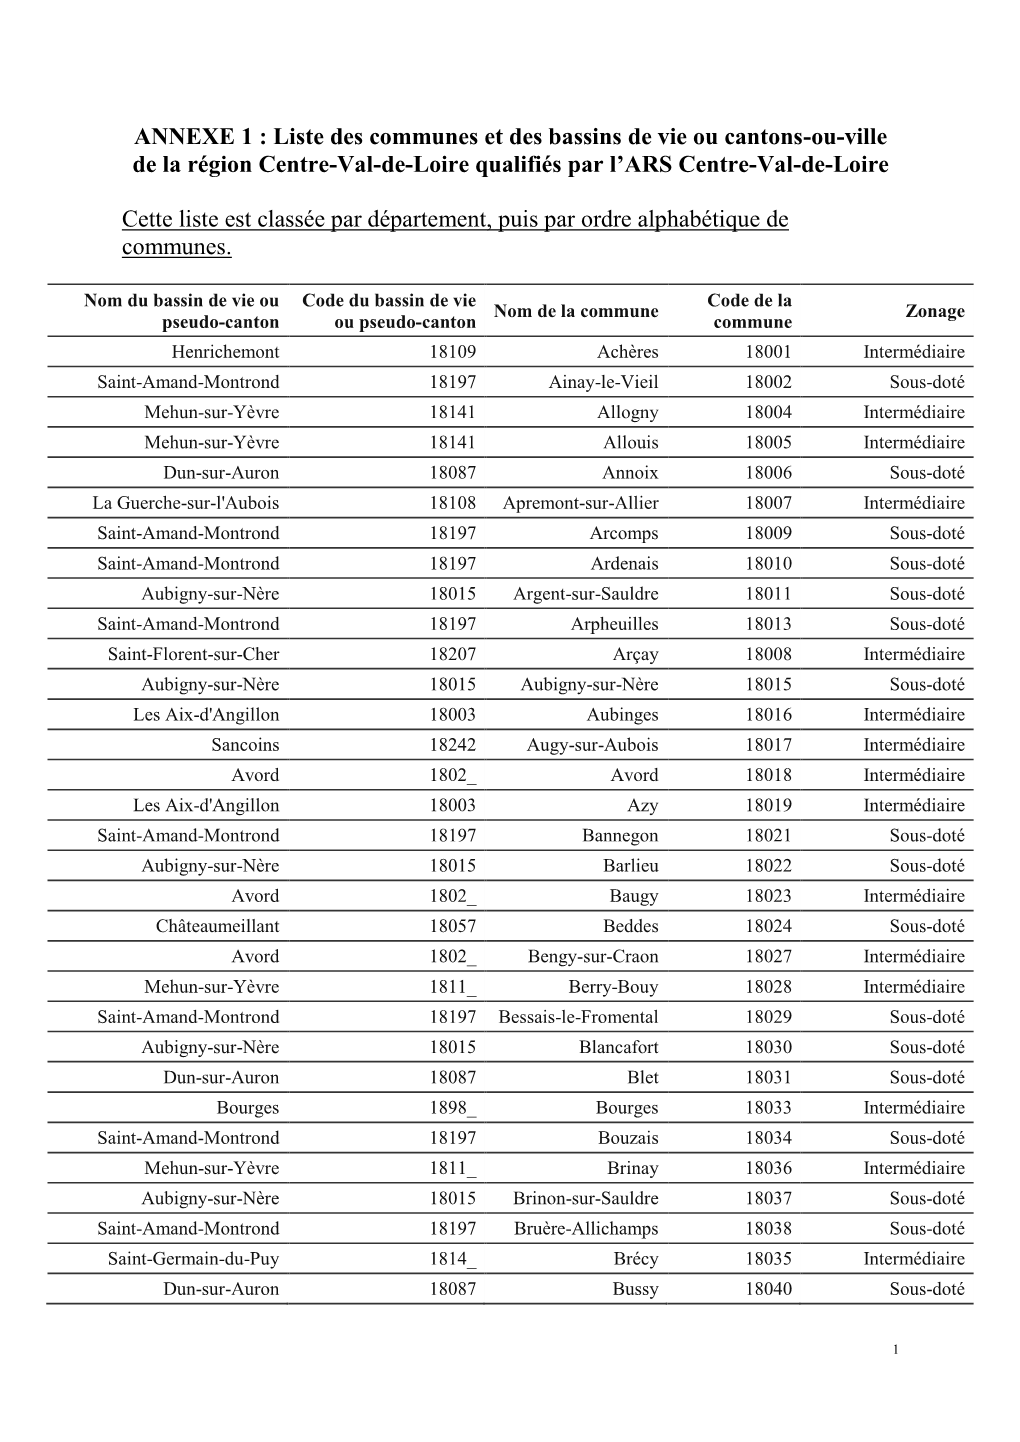 ANNEXE 1 : Liste Des Communes Et Des Bassins De Vie Ou Cantons-Ou-Ville De La Région Centre-Val-De-Loire Qualifiés Par L’ARS Centre-Val-De-Loire